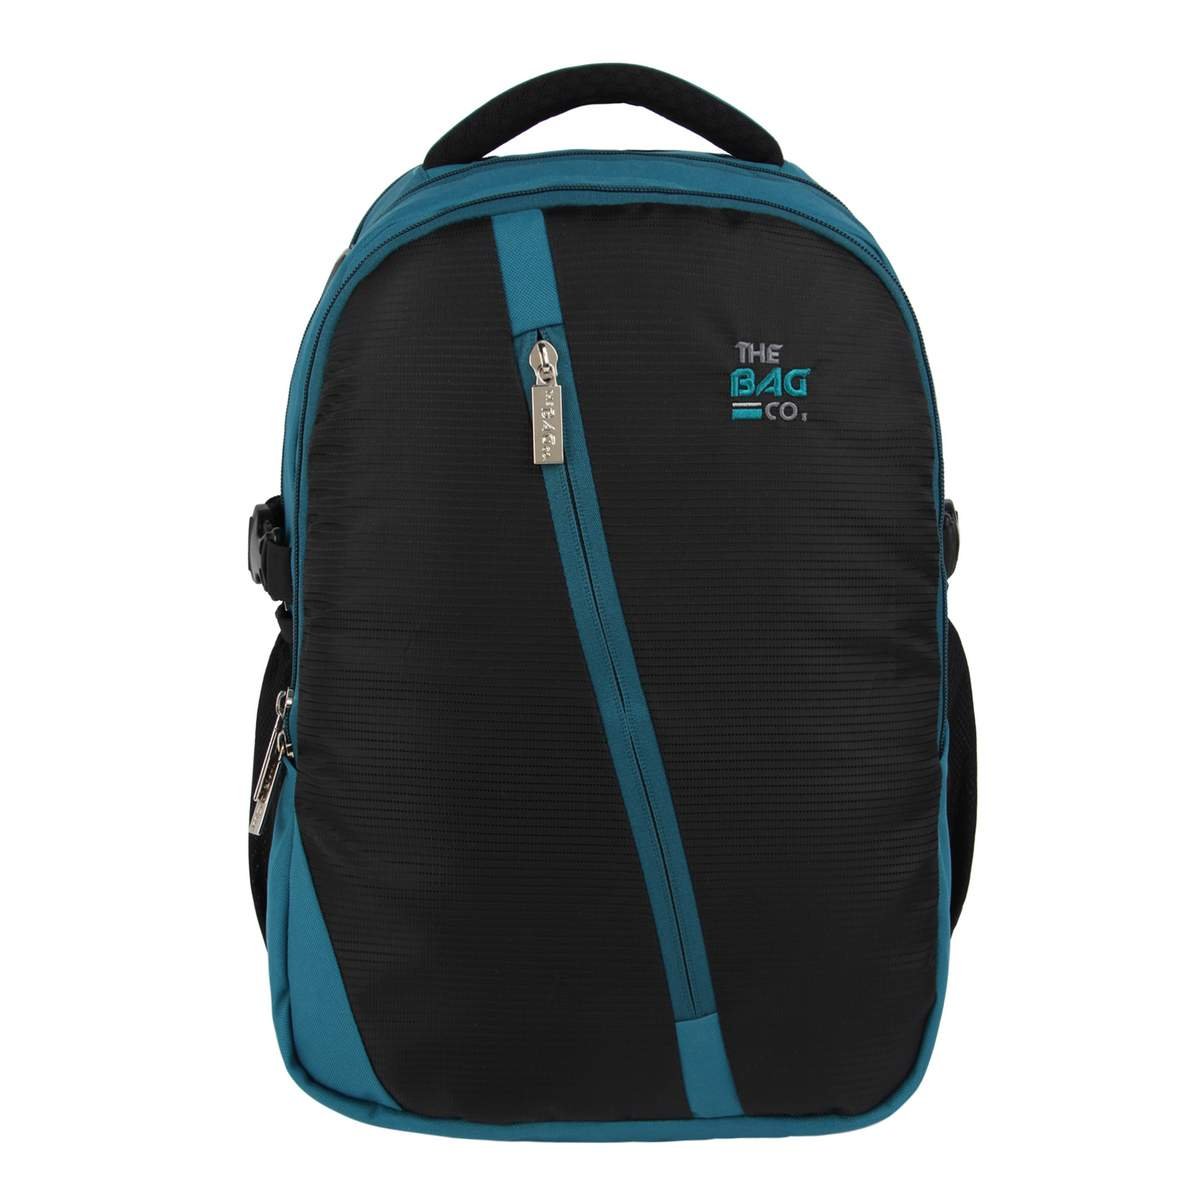 Wild Look 50 Liters Waterproof stylish college bags, school bags, Backpack  50 L Laptop Backpack red - Price in India | Flipkart.com